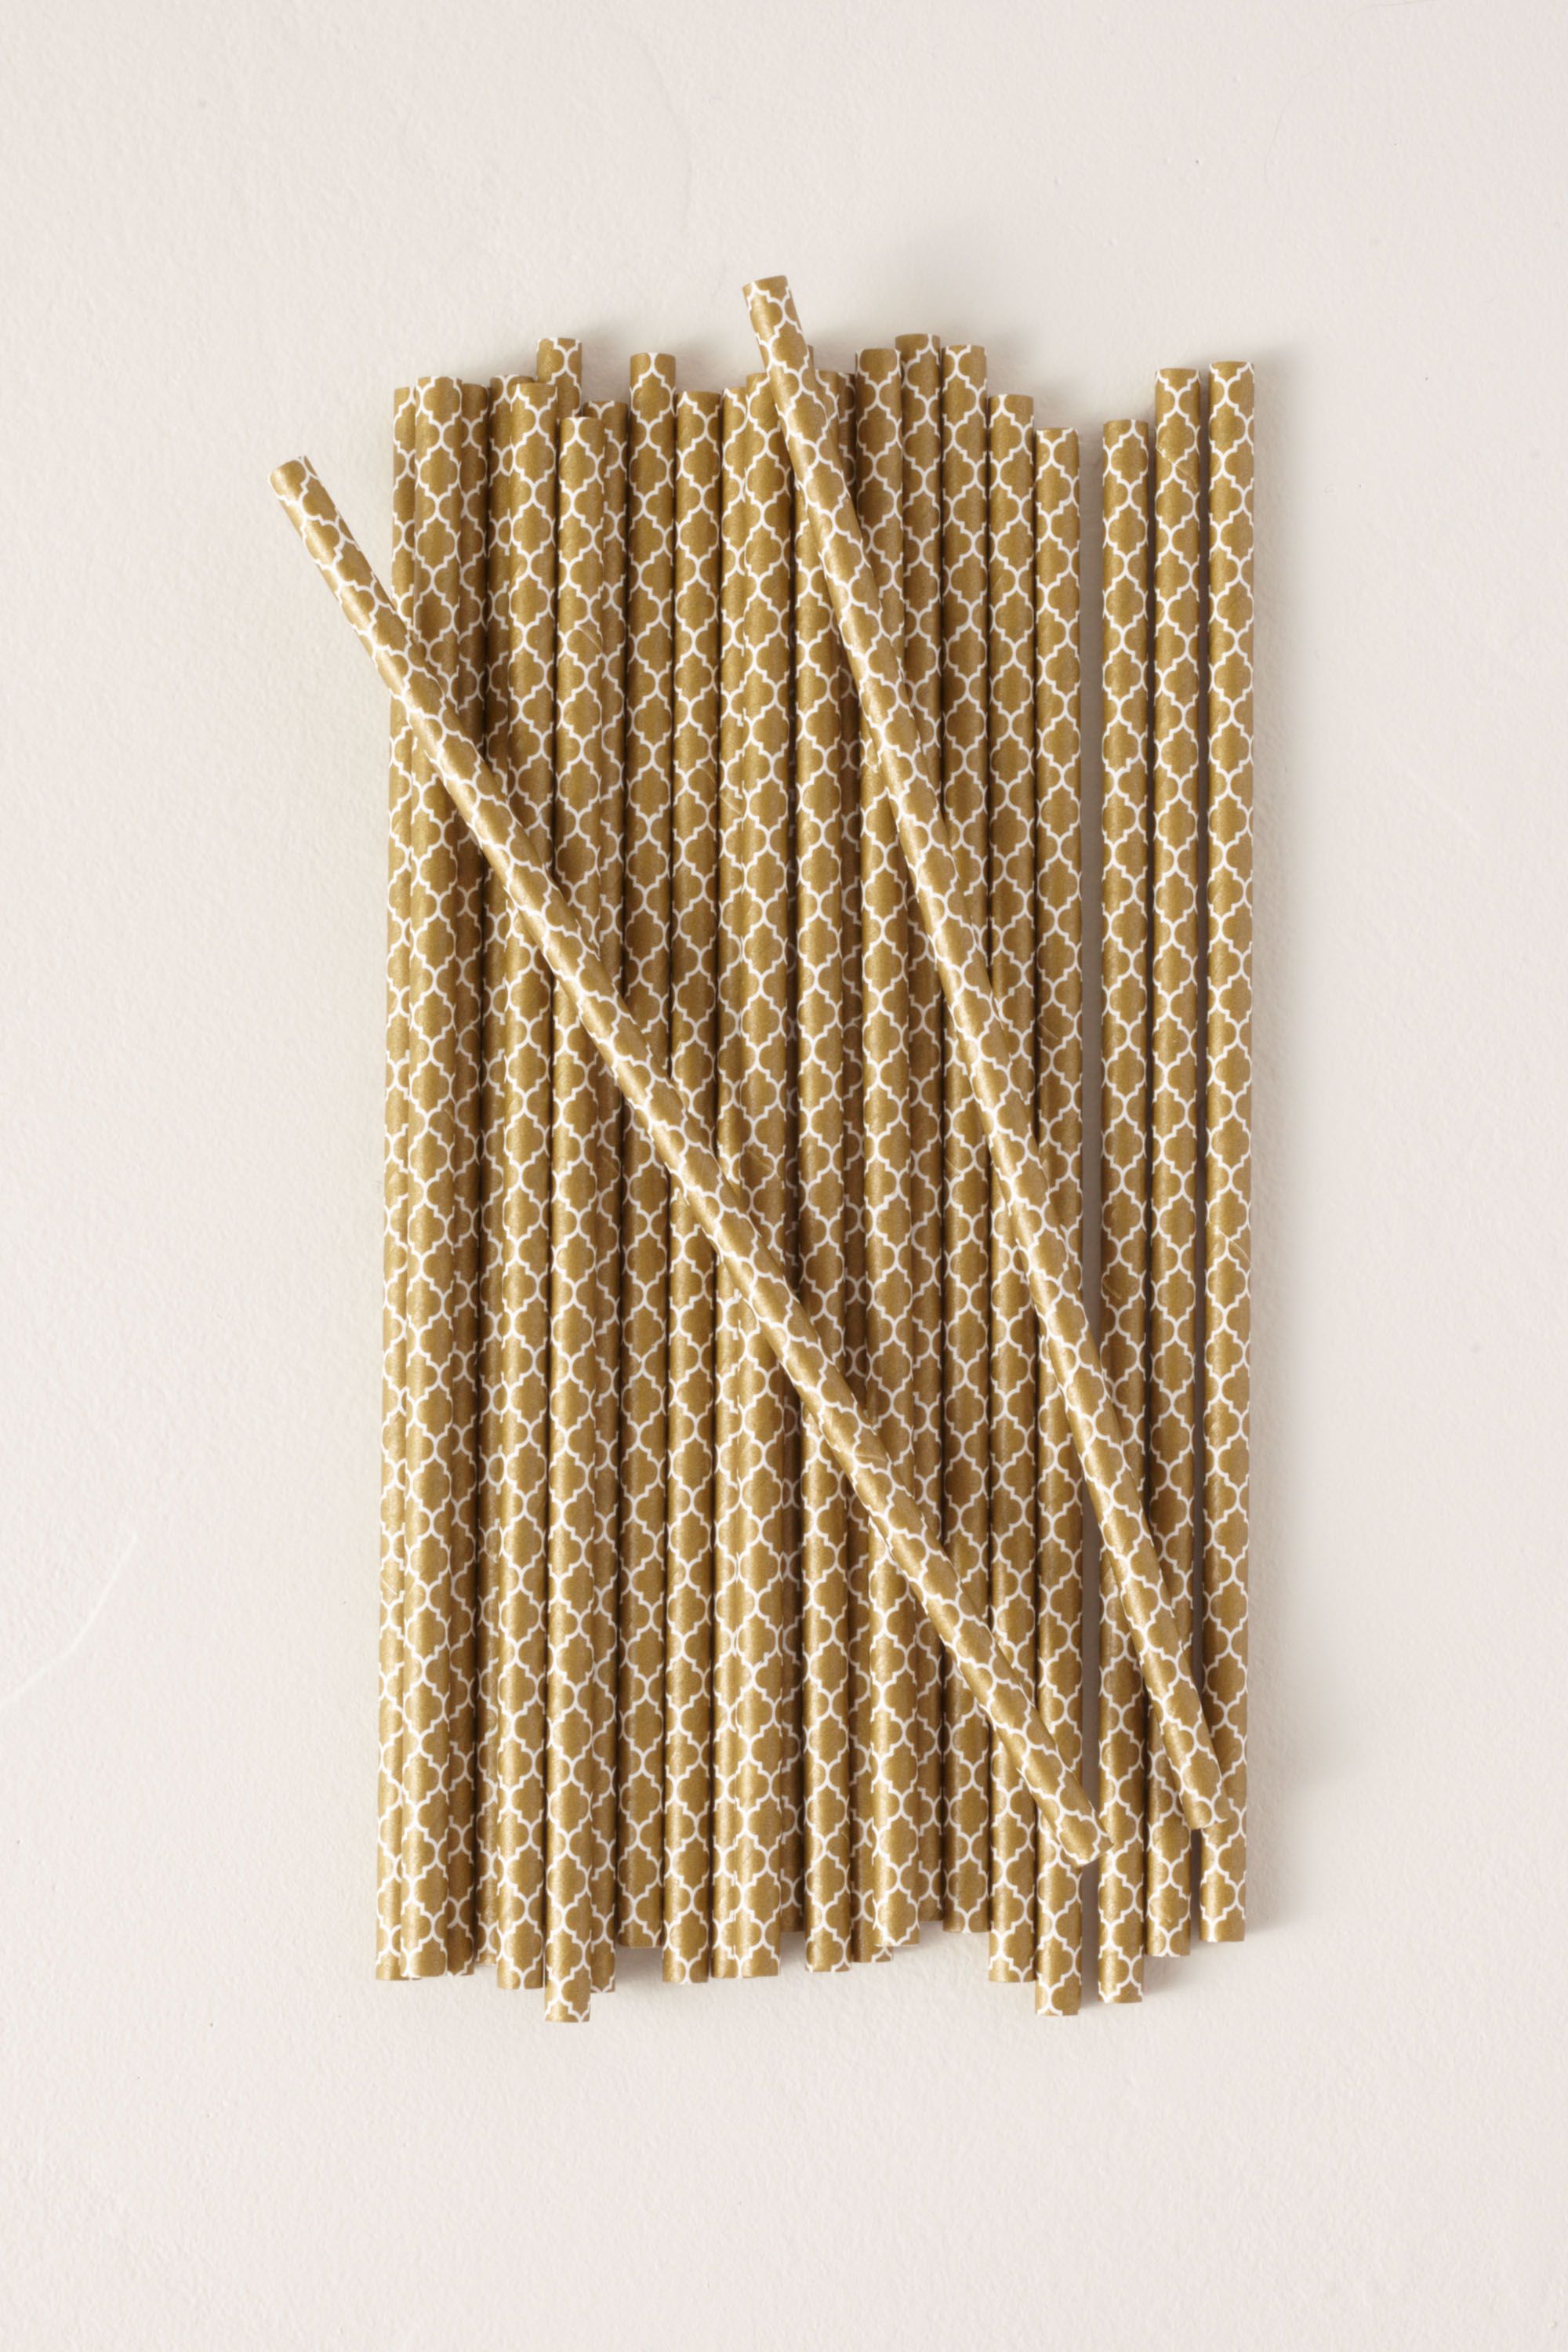 Gold Quatrefoil Paper Straws | BHLDN